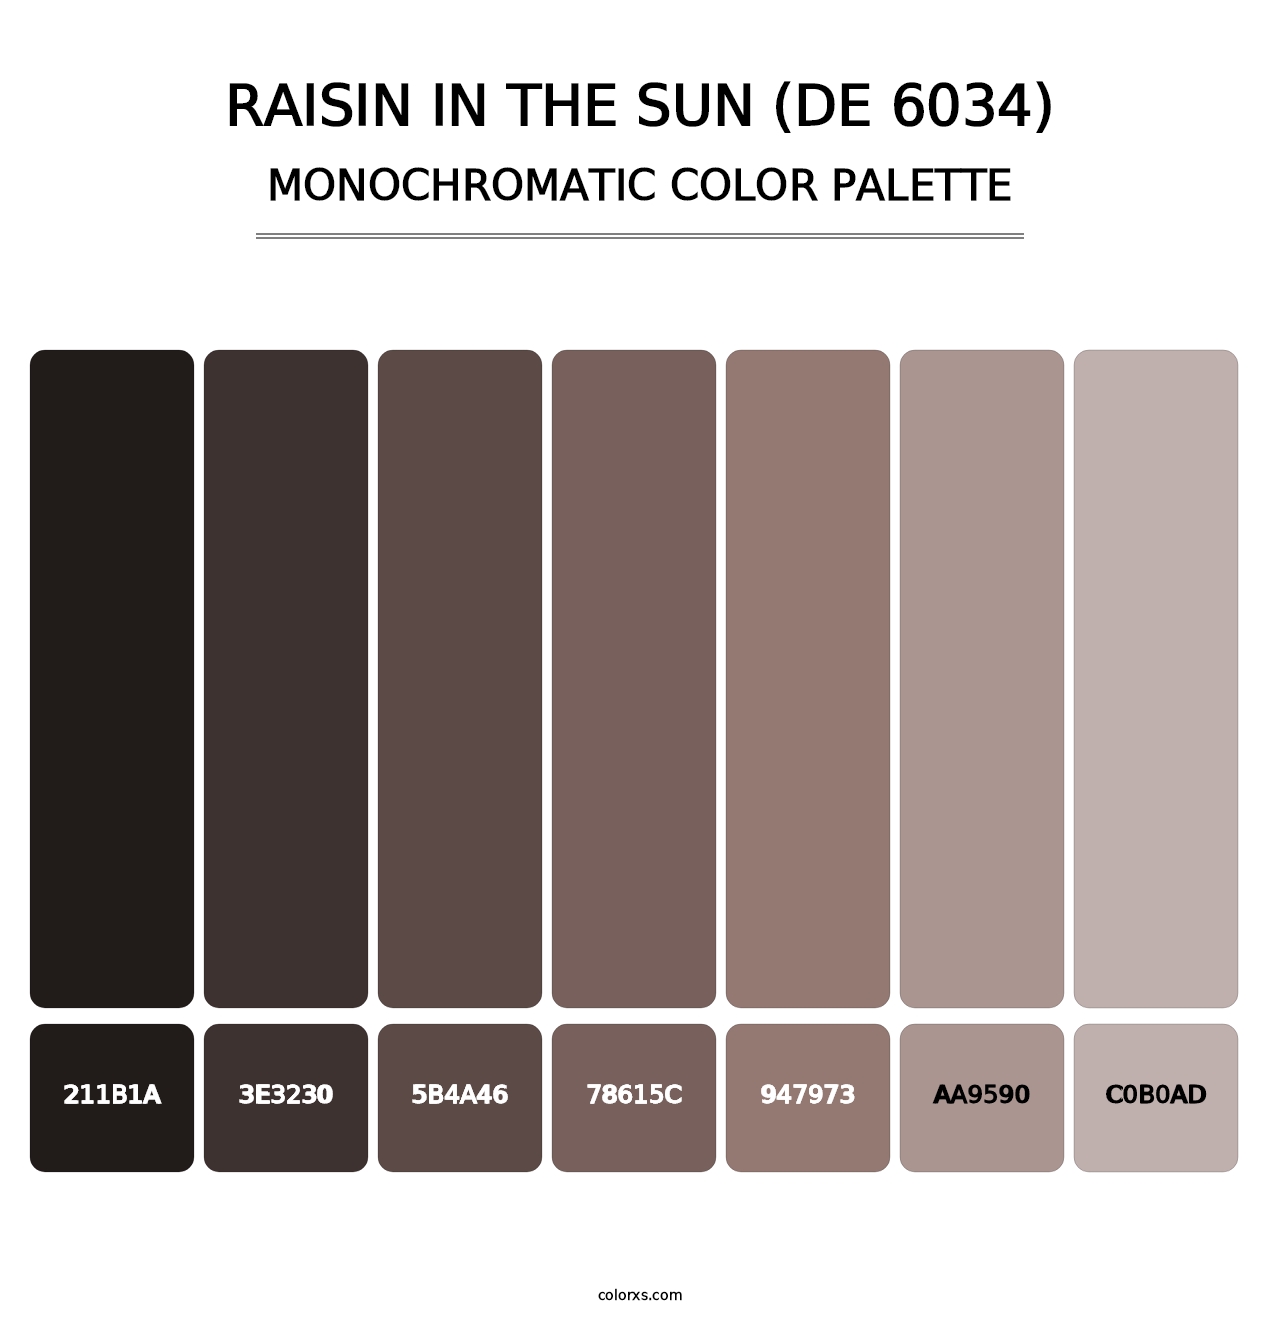 Raisin in the Sun (DE 6034) - Monochromatic Color Palette